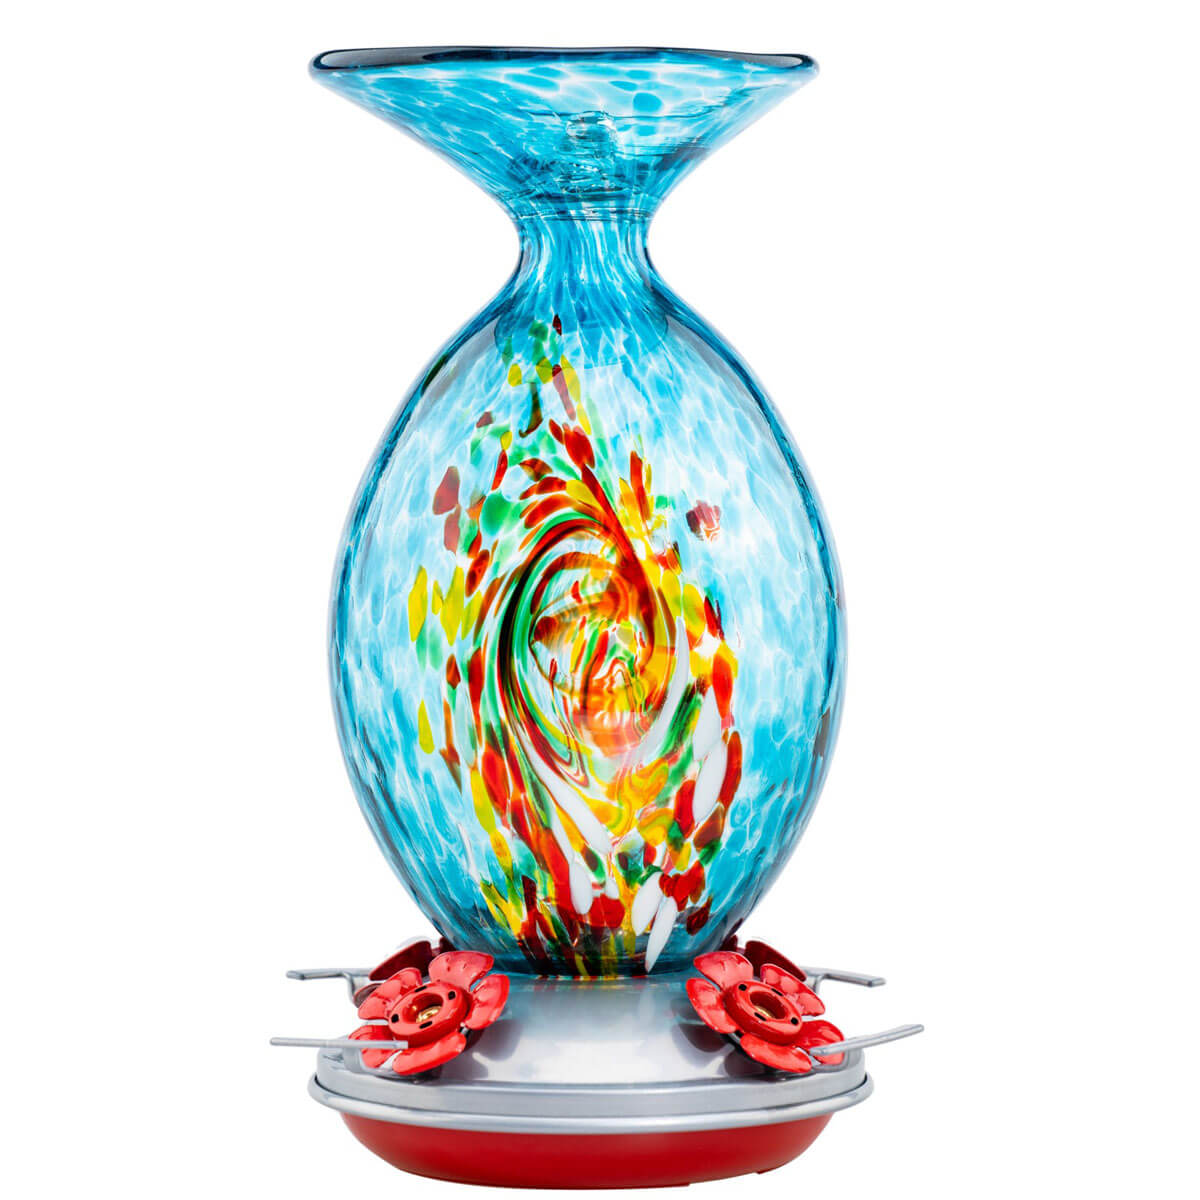 Decorative and unique hand-blown blue-green Murano glass vase